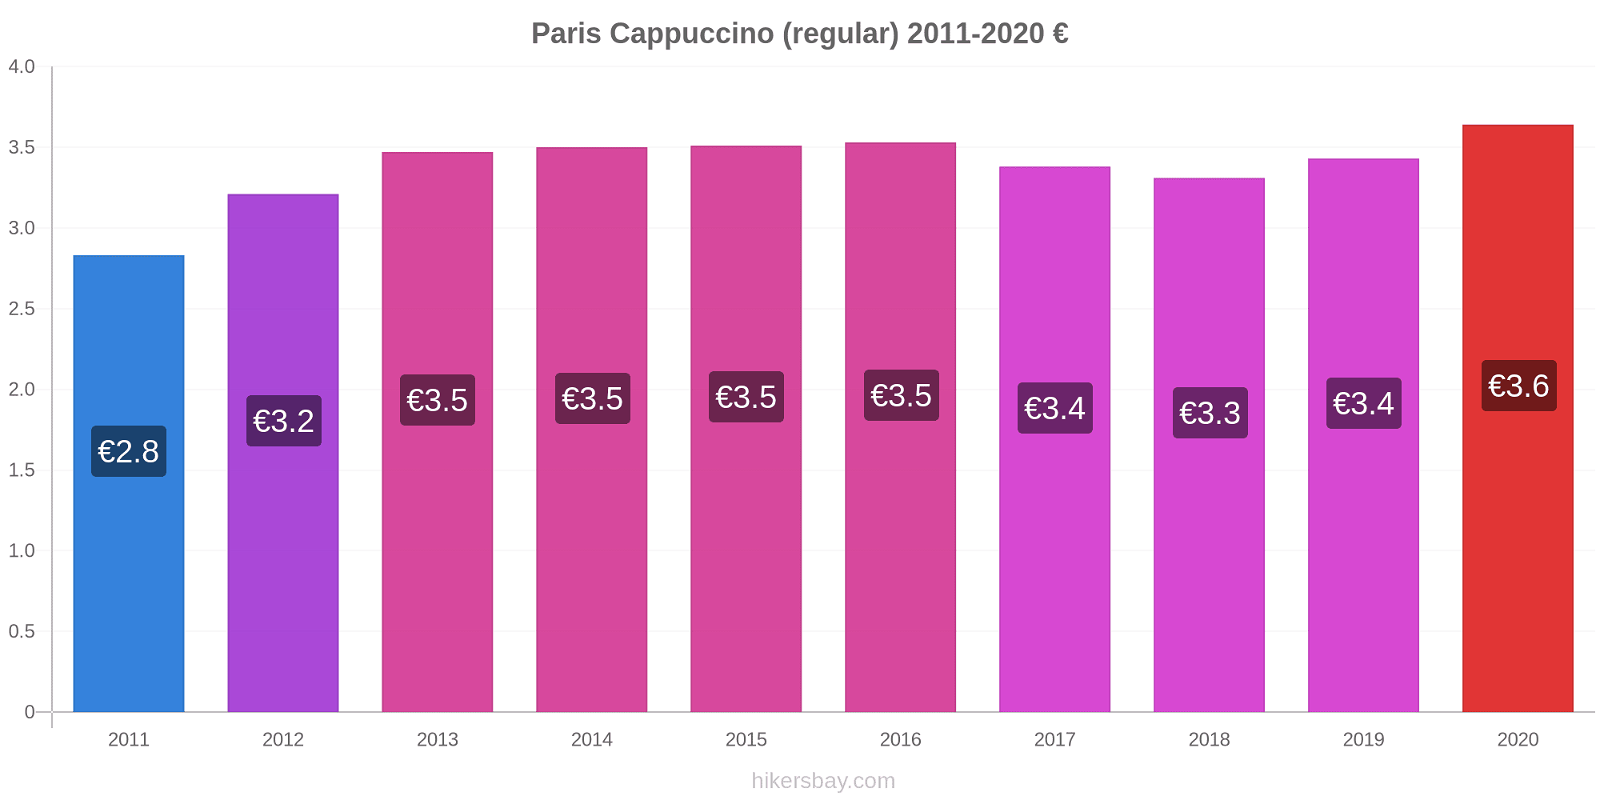 Paris variação de preço Capuccino (regular) hikersbay.com